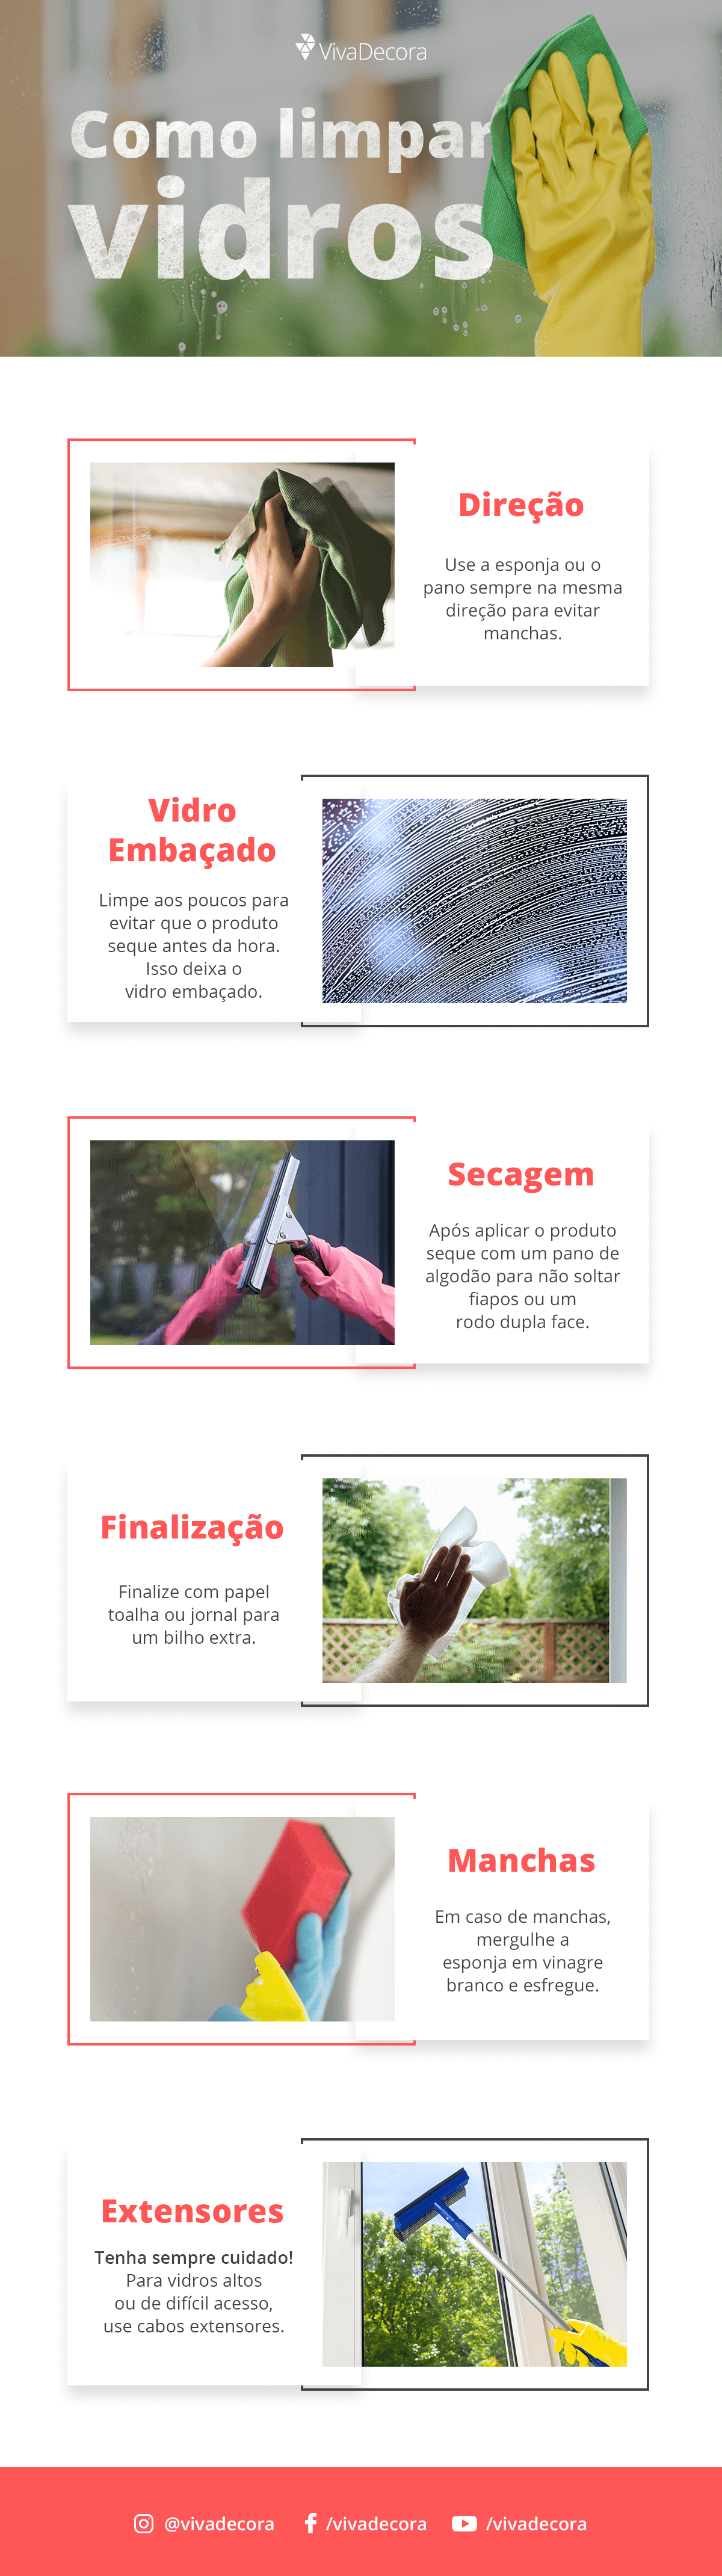 Infográfico - Como limpar vidros